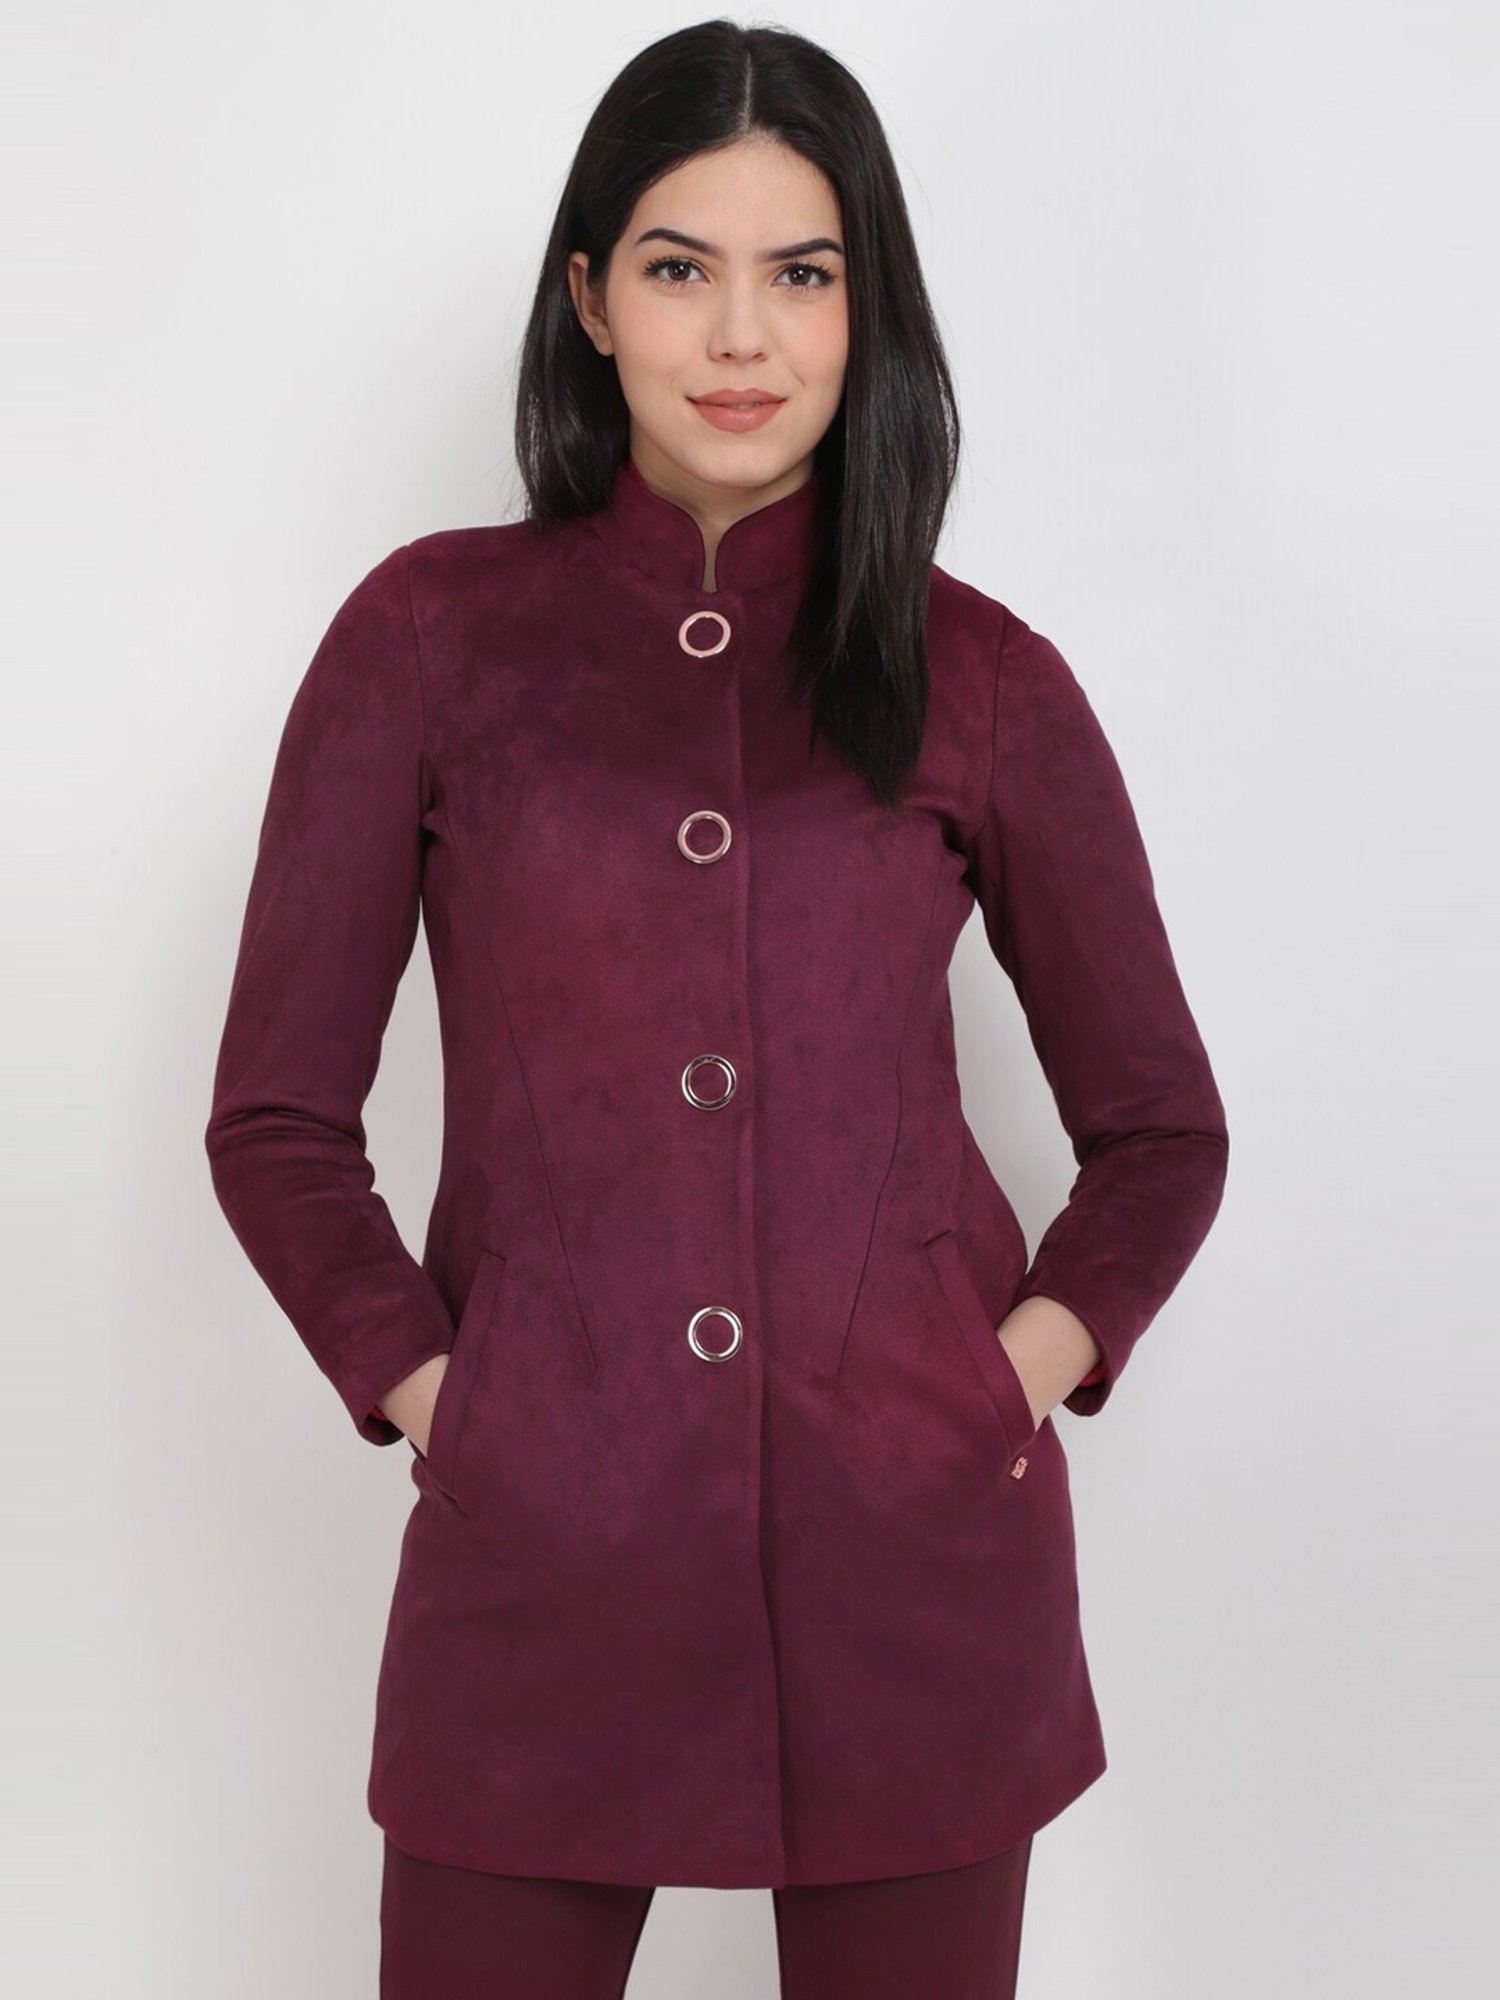 Buy Women Maroon Solid Casual Jacket Online - 187599 | Allen Solly